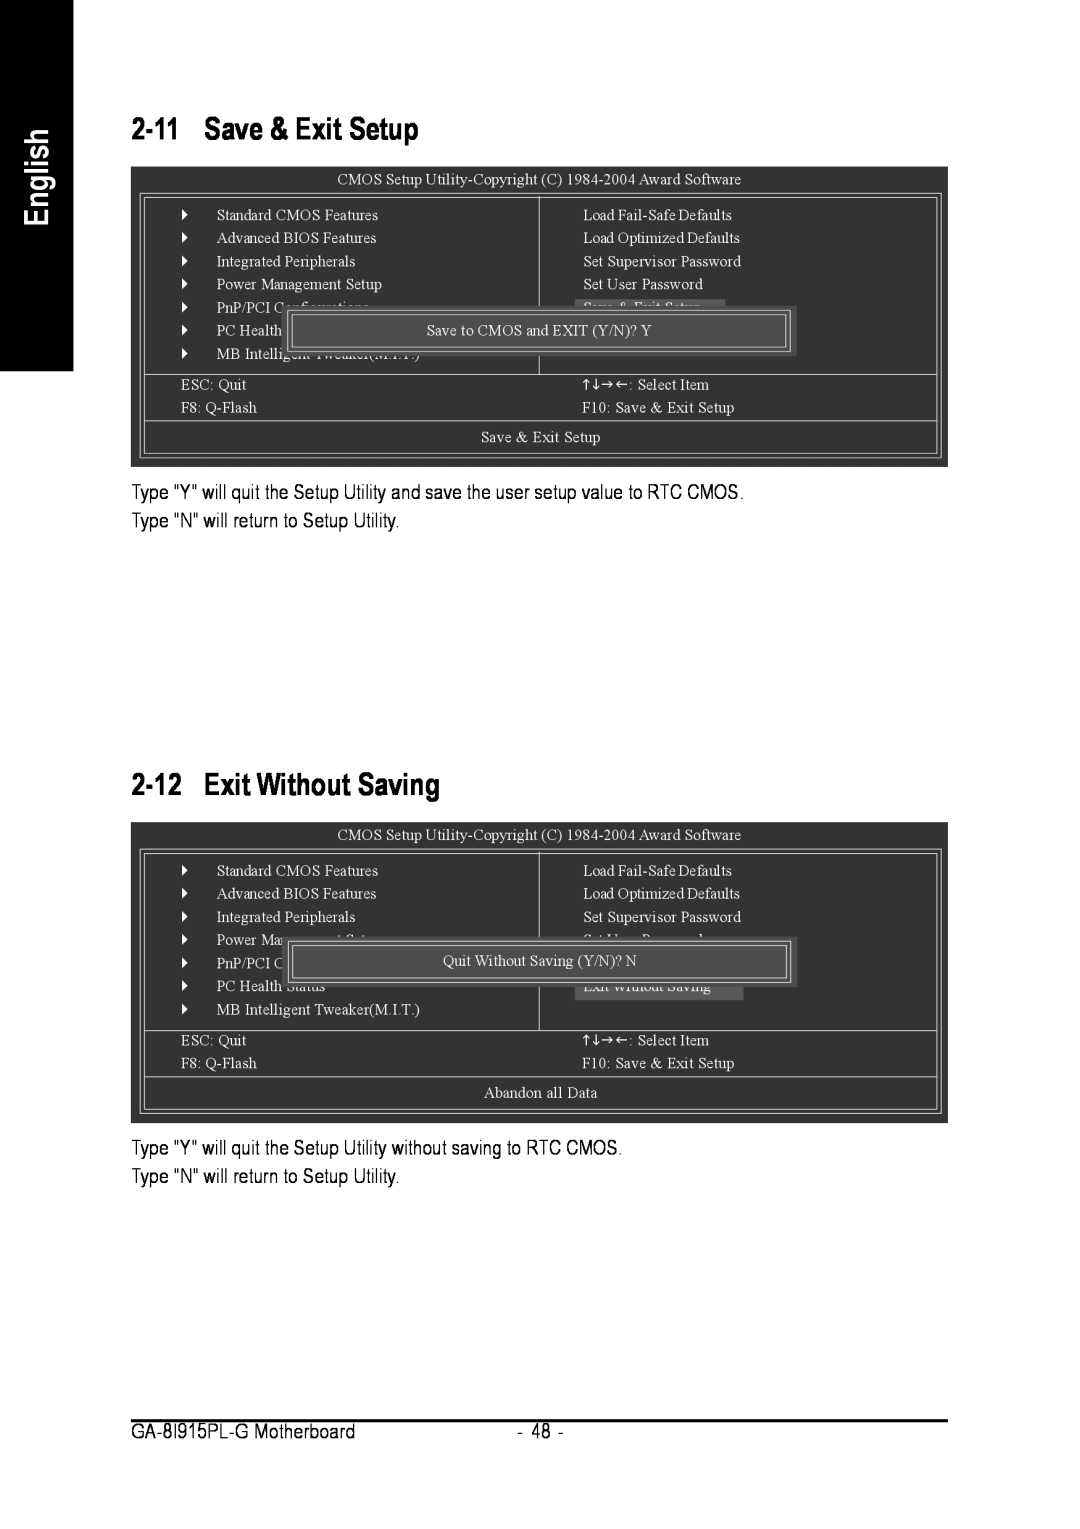 Intel GA-8I915PL-G user manual Save & Exit Setup, Exit Without Saving, English 